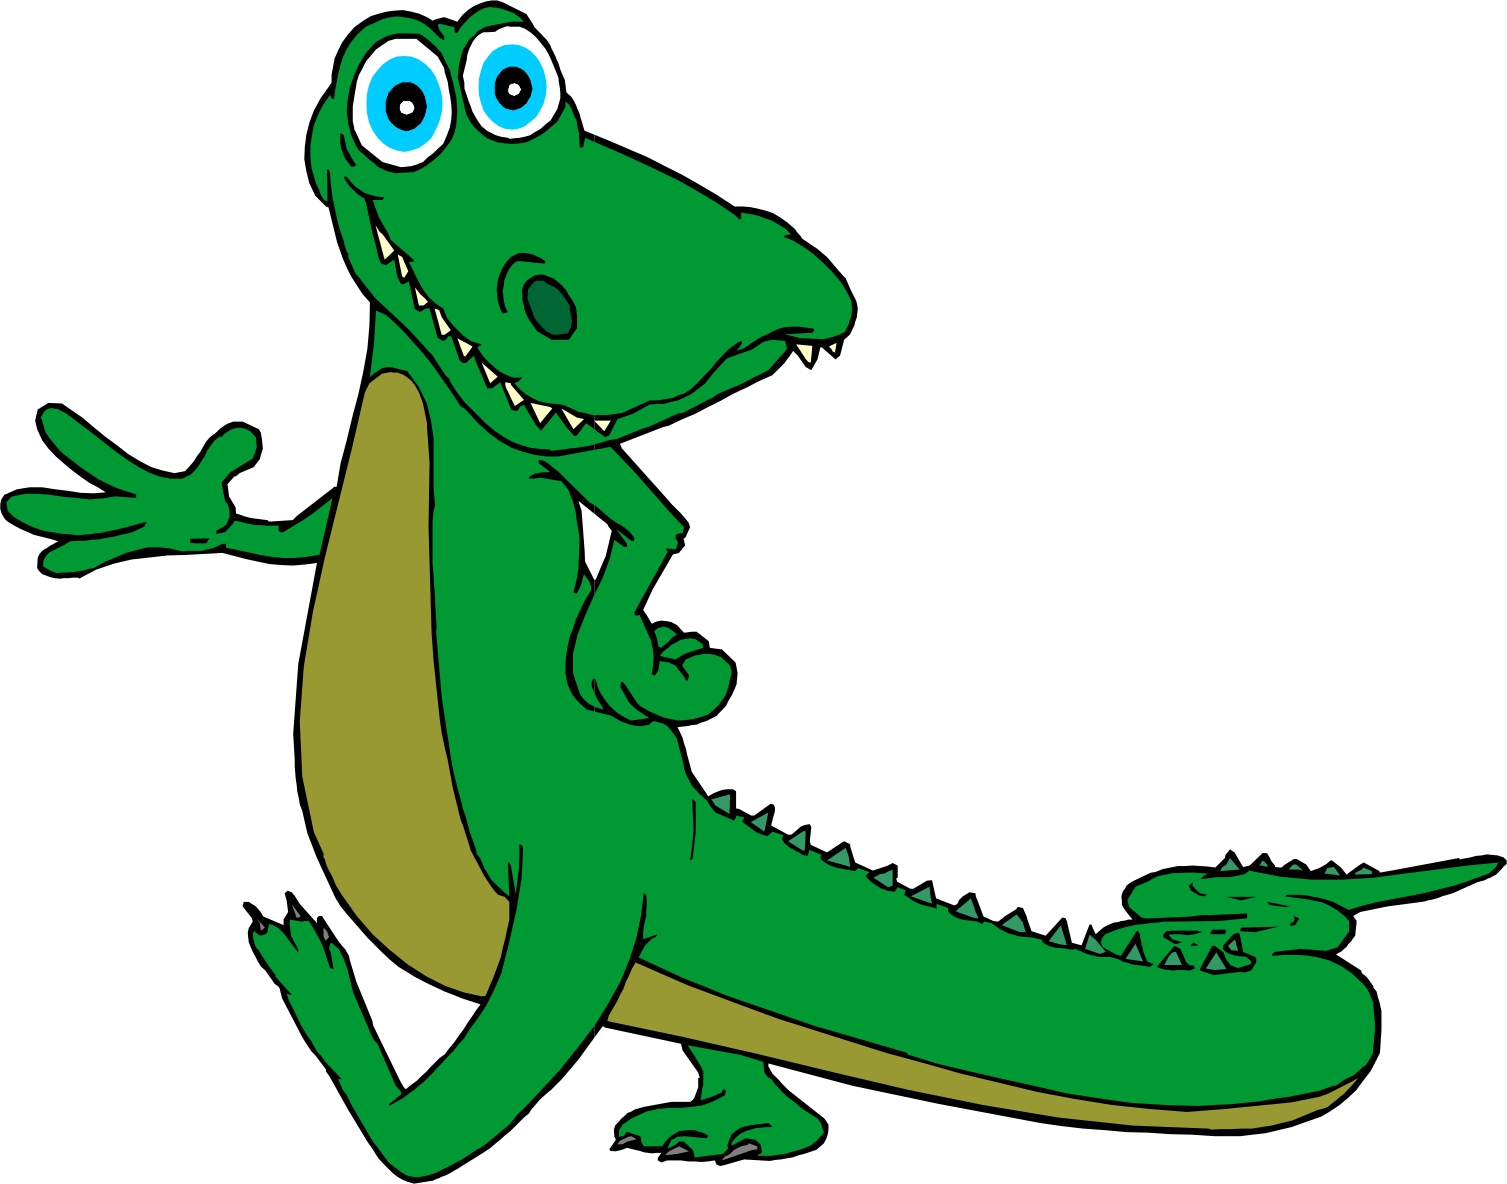 Alligator Cartoon Images 